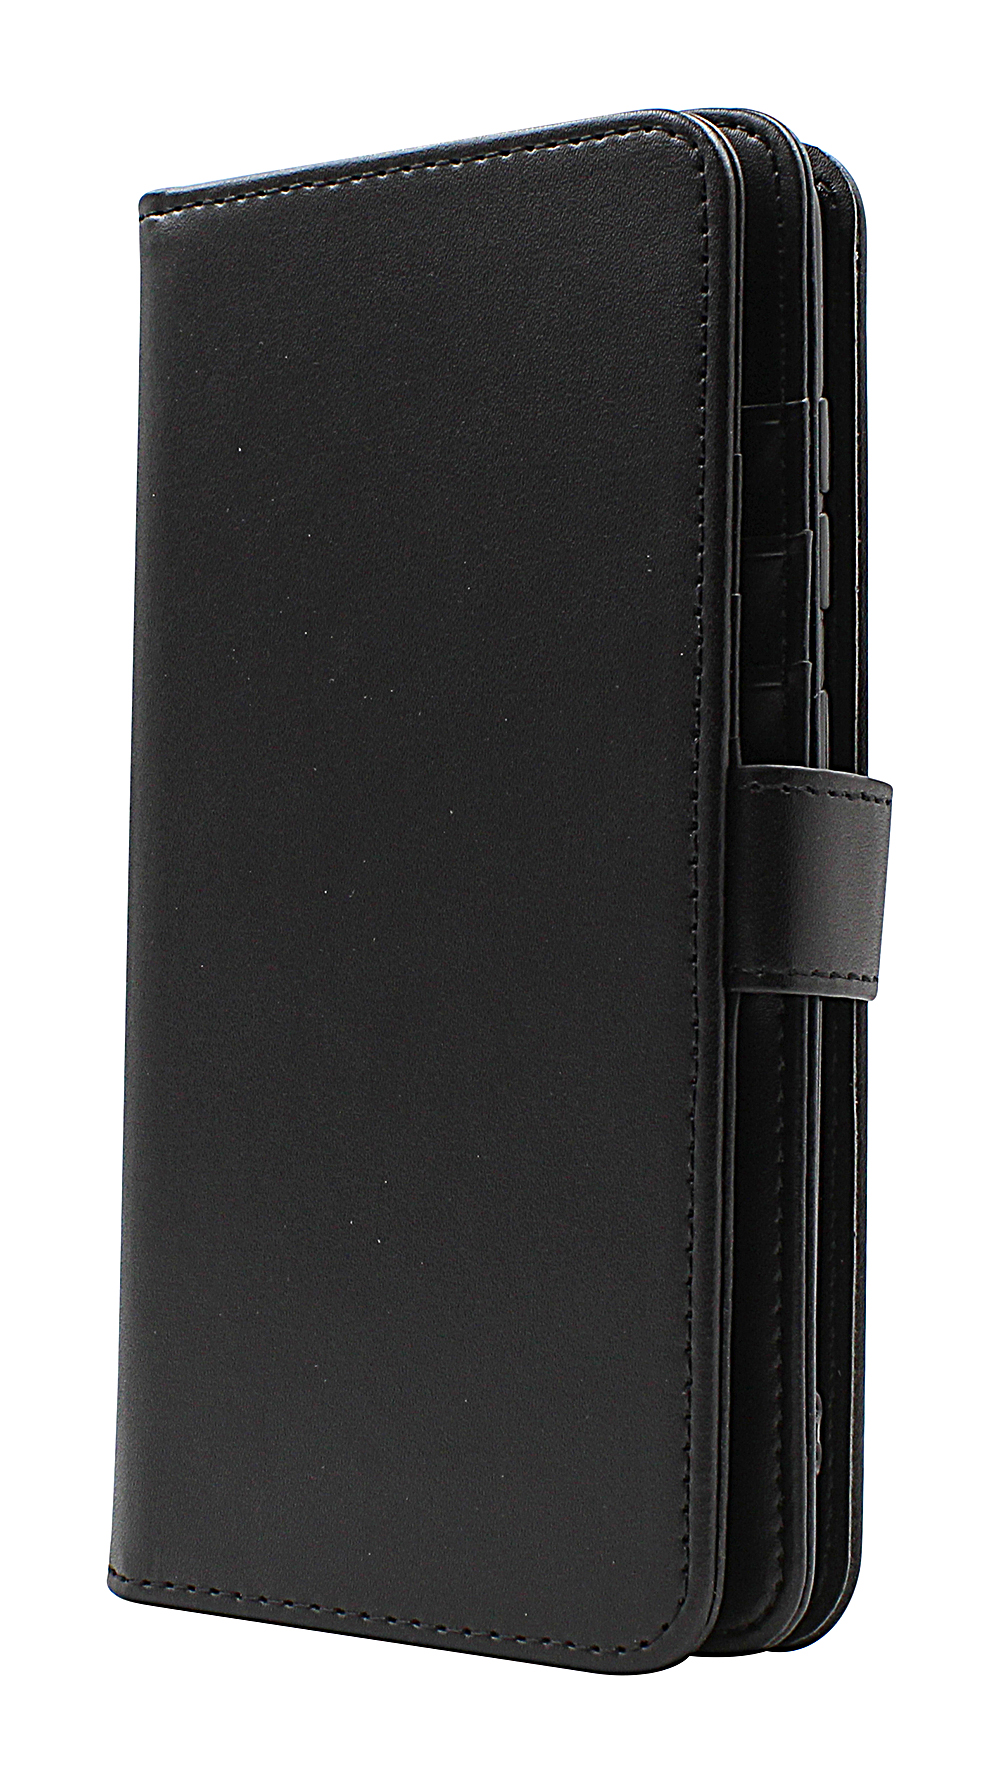 Skimblocker XL Wallet Samsung Galaxy A51 (A515F/DS)